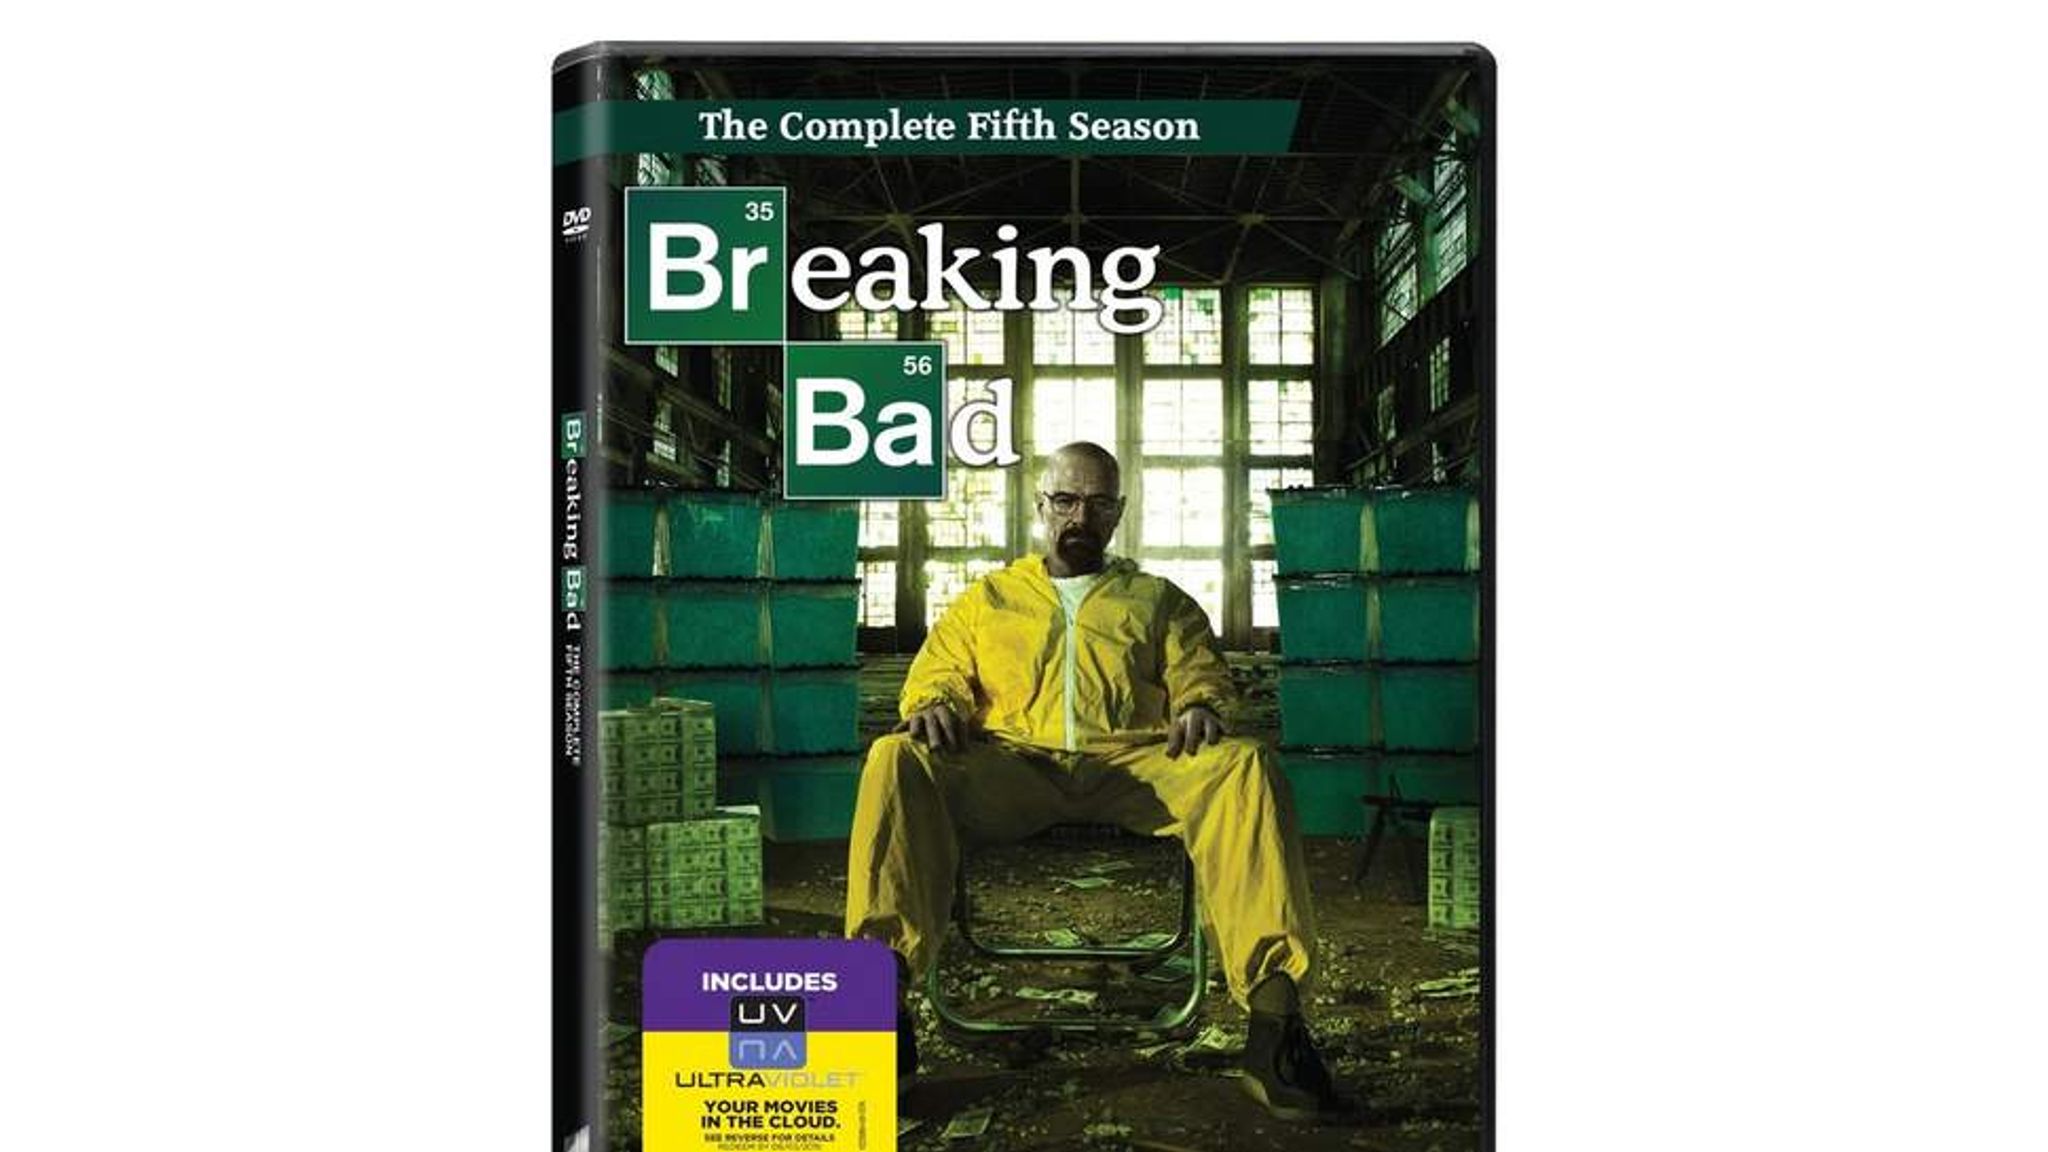 breaking bad final season dvd